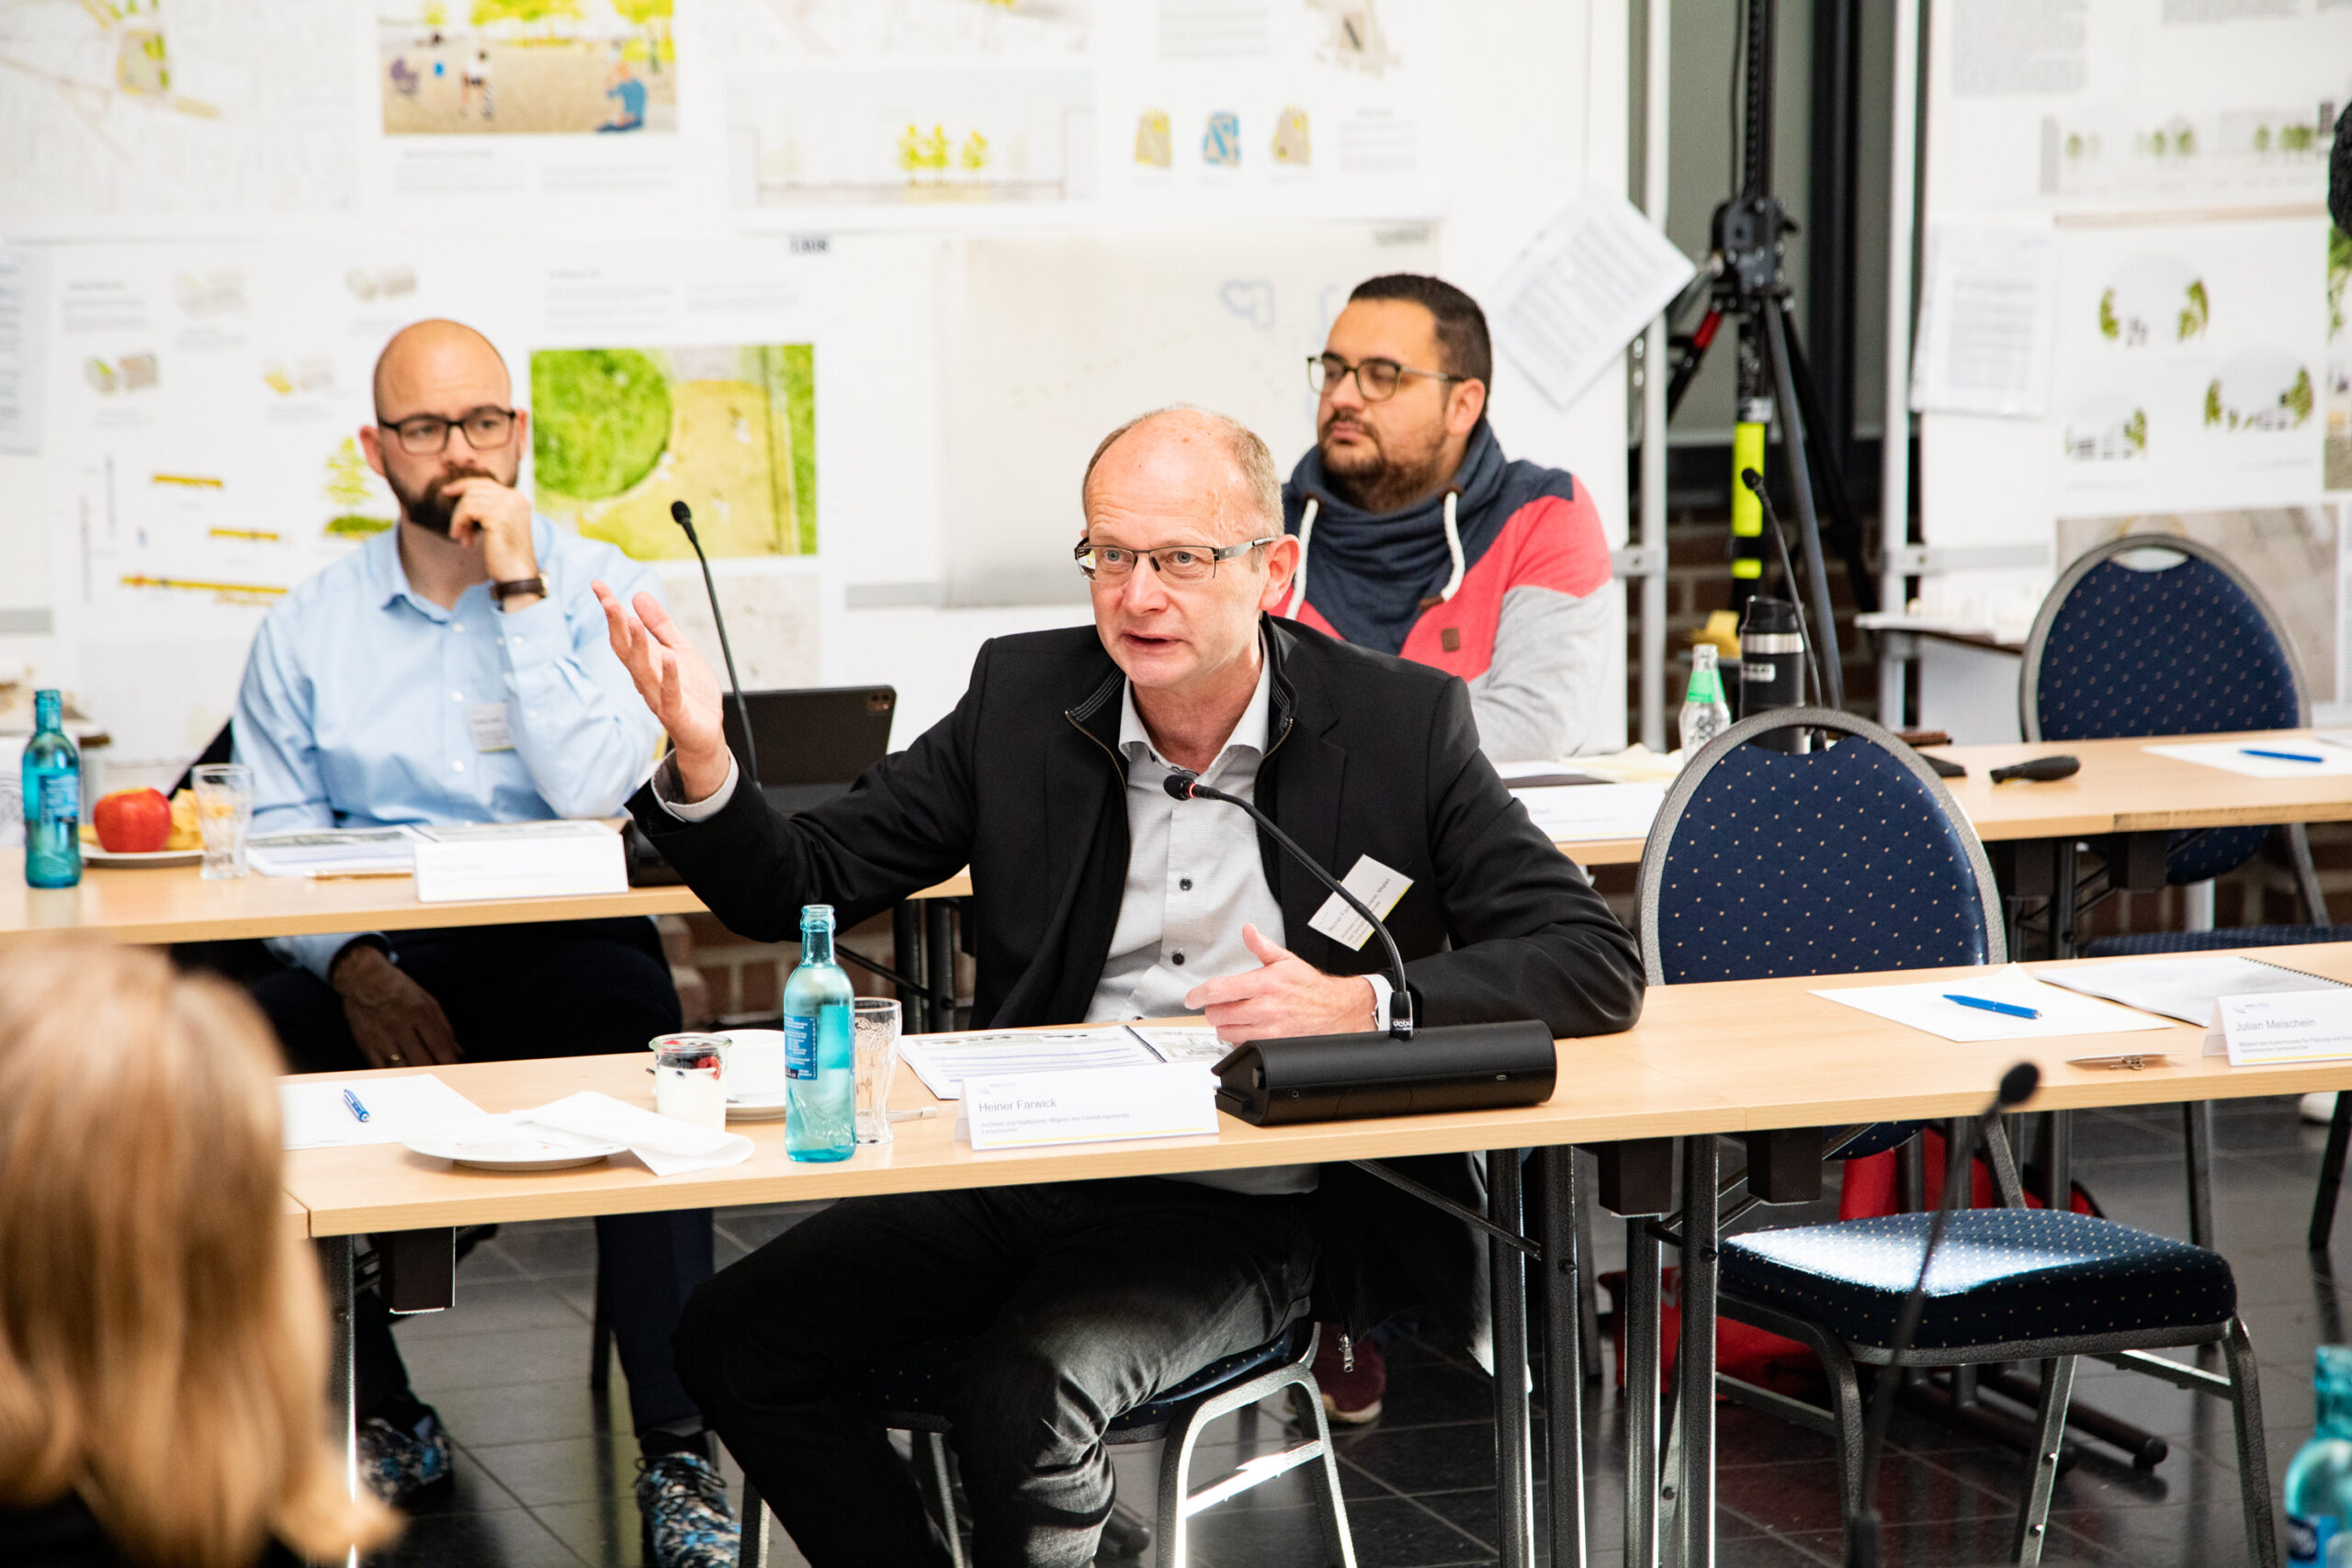 Preisgerichtsitzung des Realisierungswettbewerbs zur Umgestaltung des August-Bebel-Platzes in Bochum-Wattenscheid